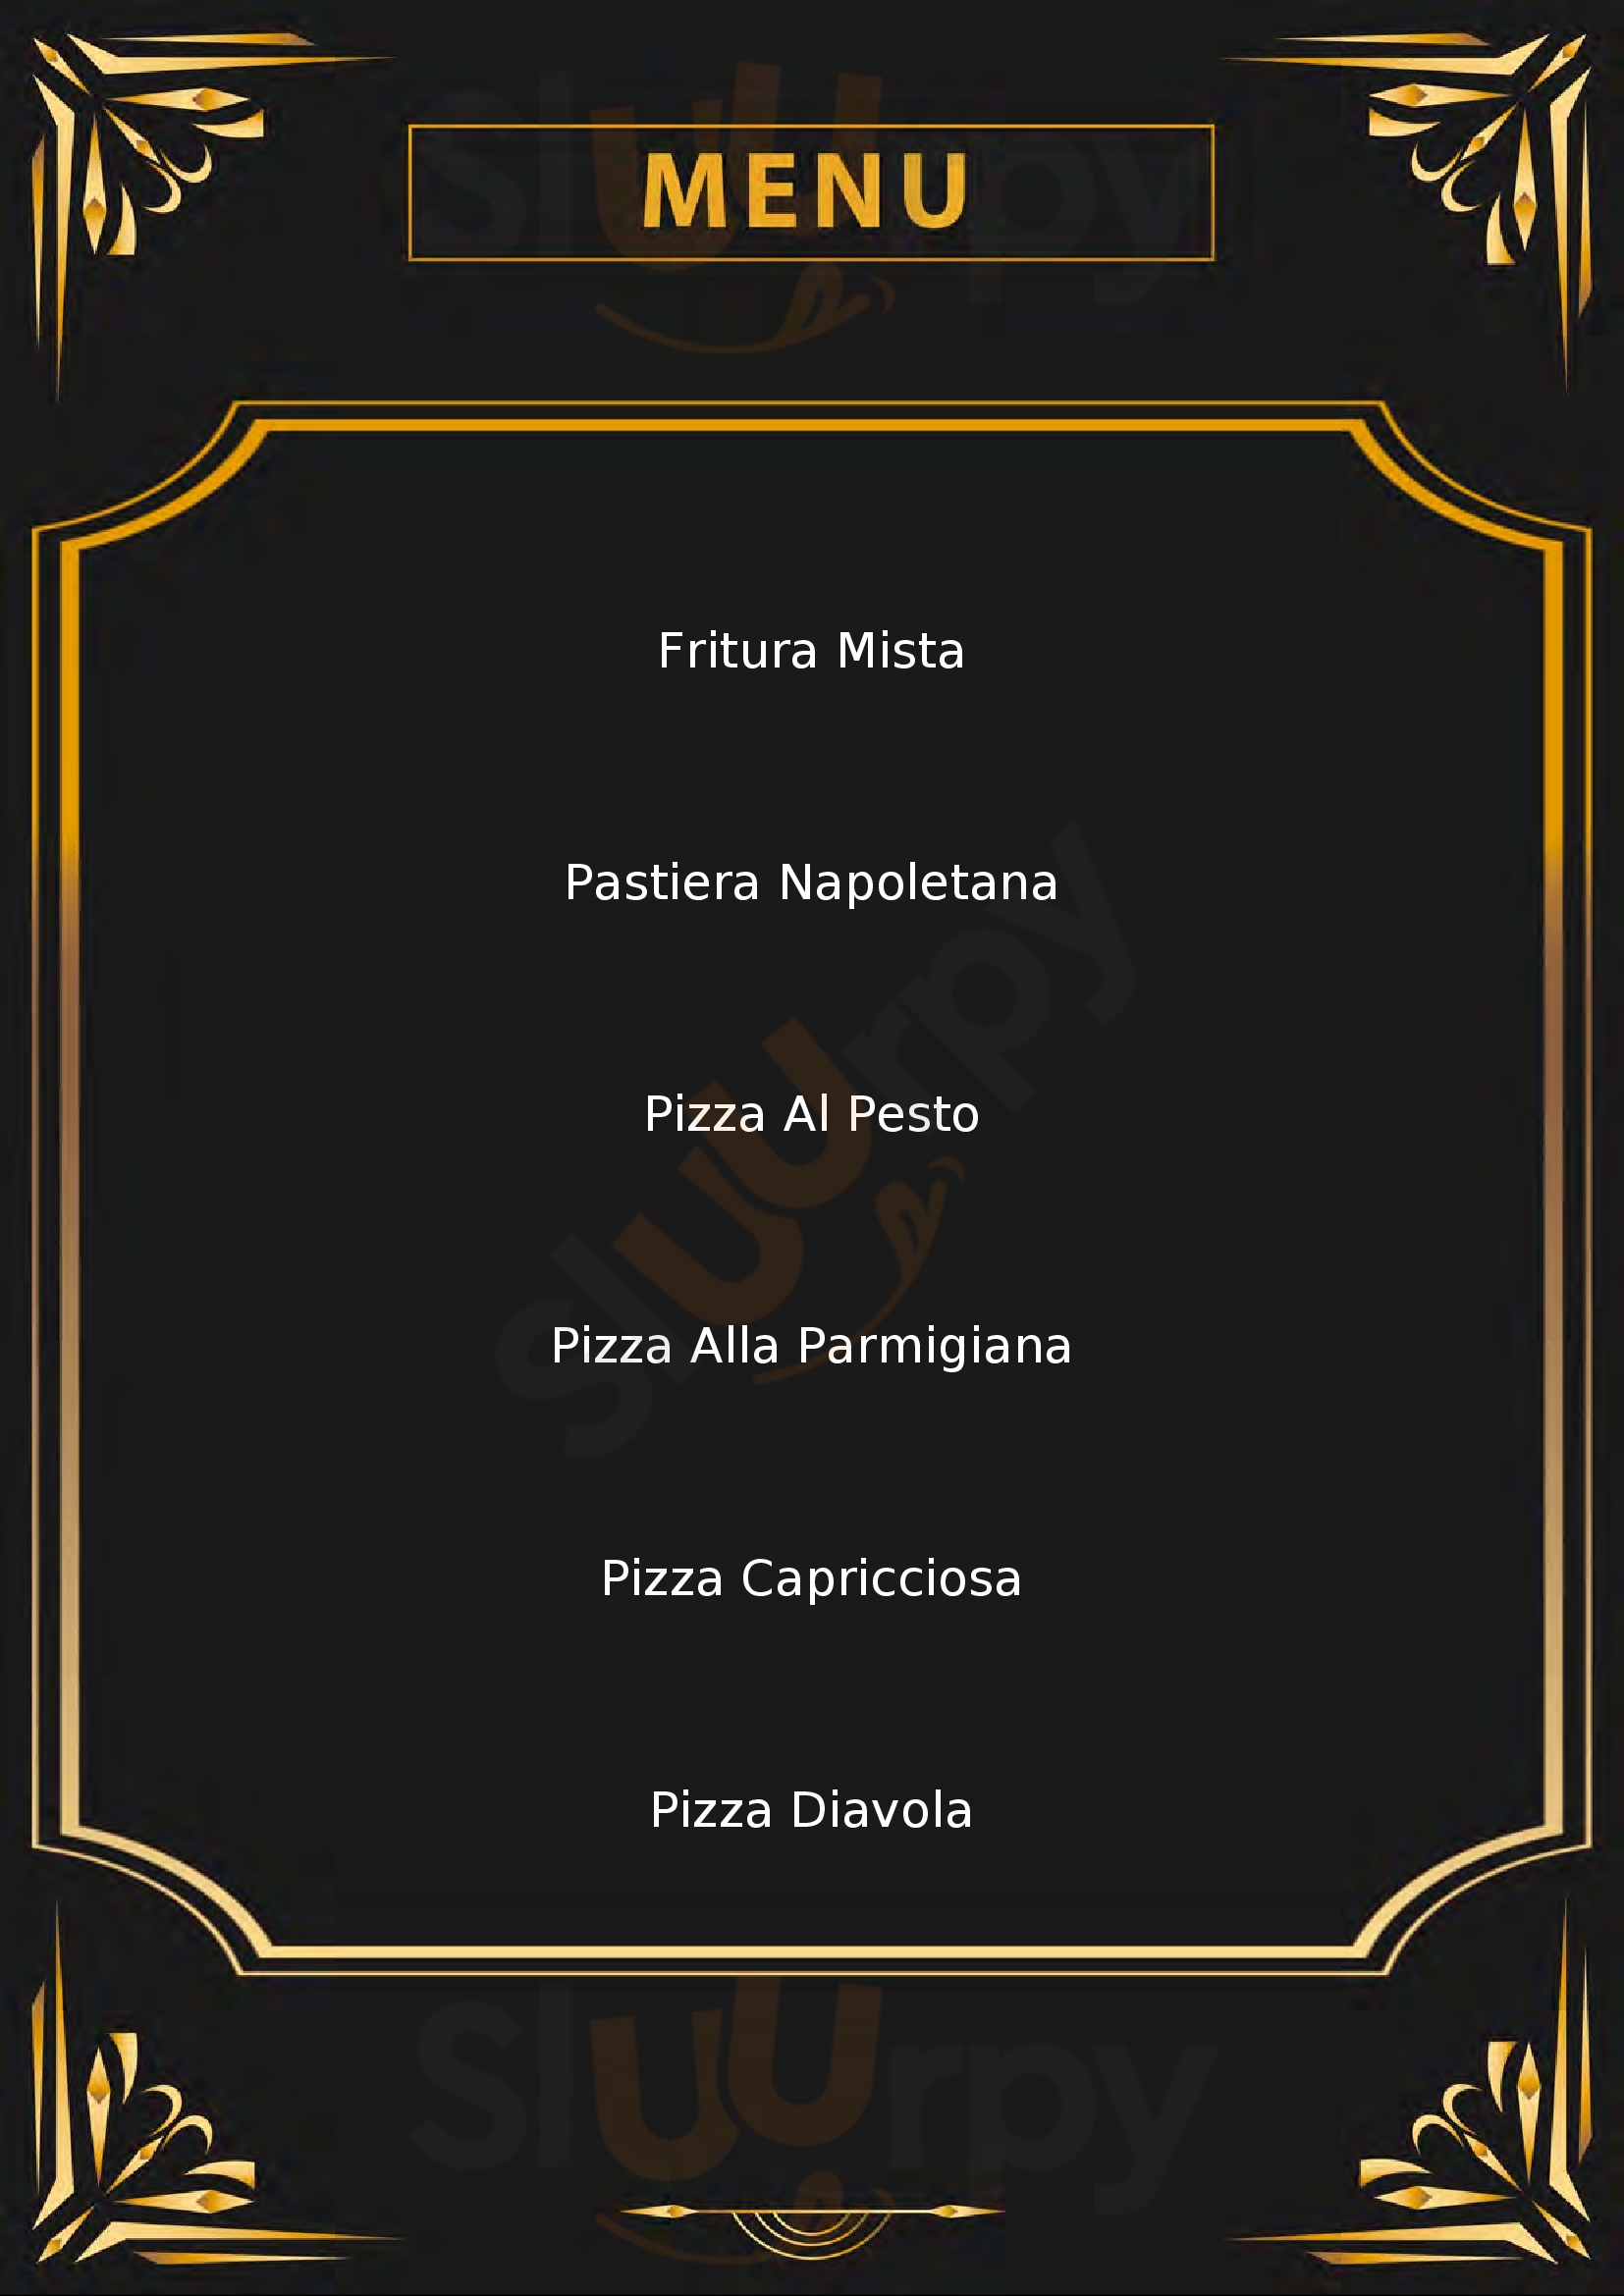 Sfizi e Pizza Anzola dell'Emilia menù 1 pagina